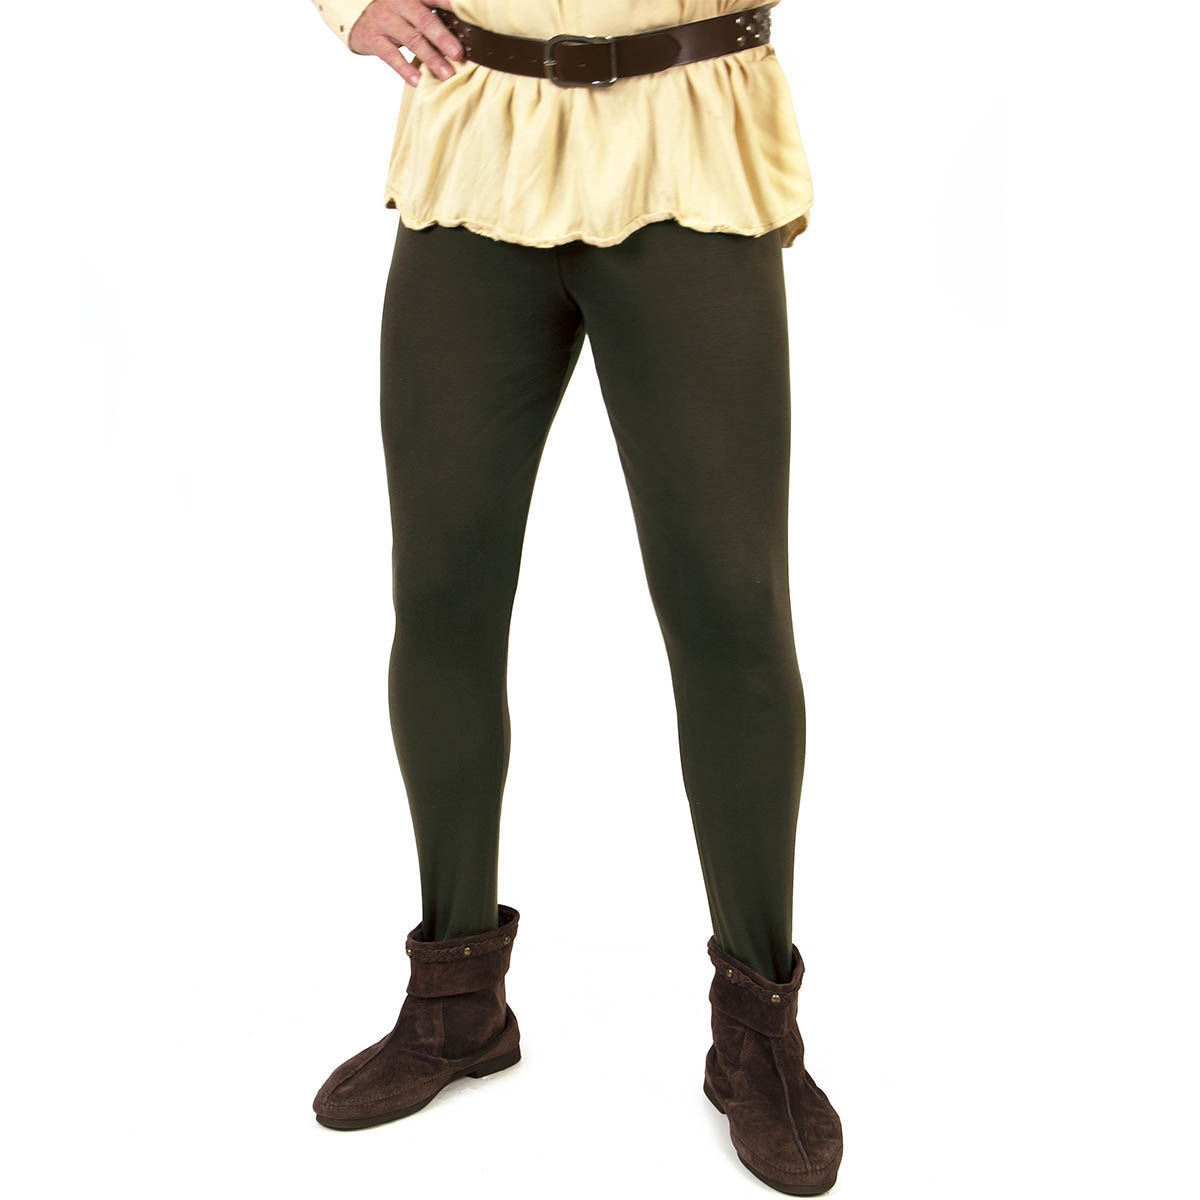 Mittelalterliche Pantalons, Farbe Grün, Größe M